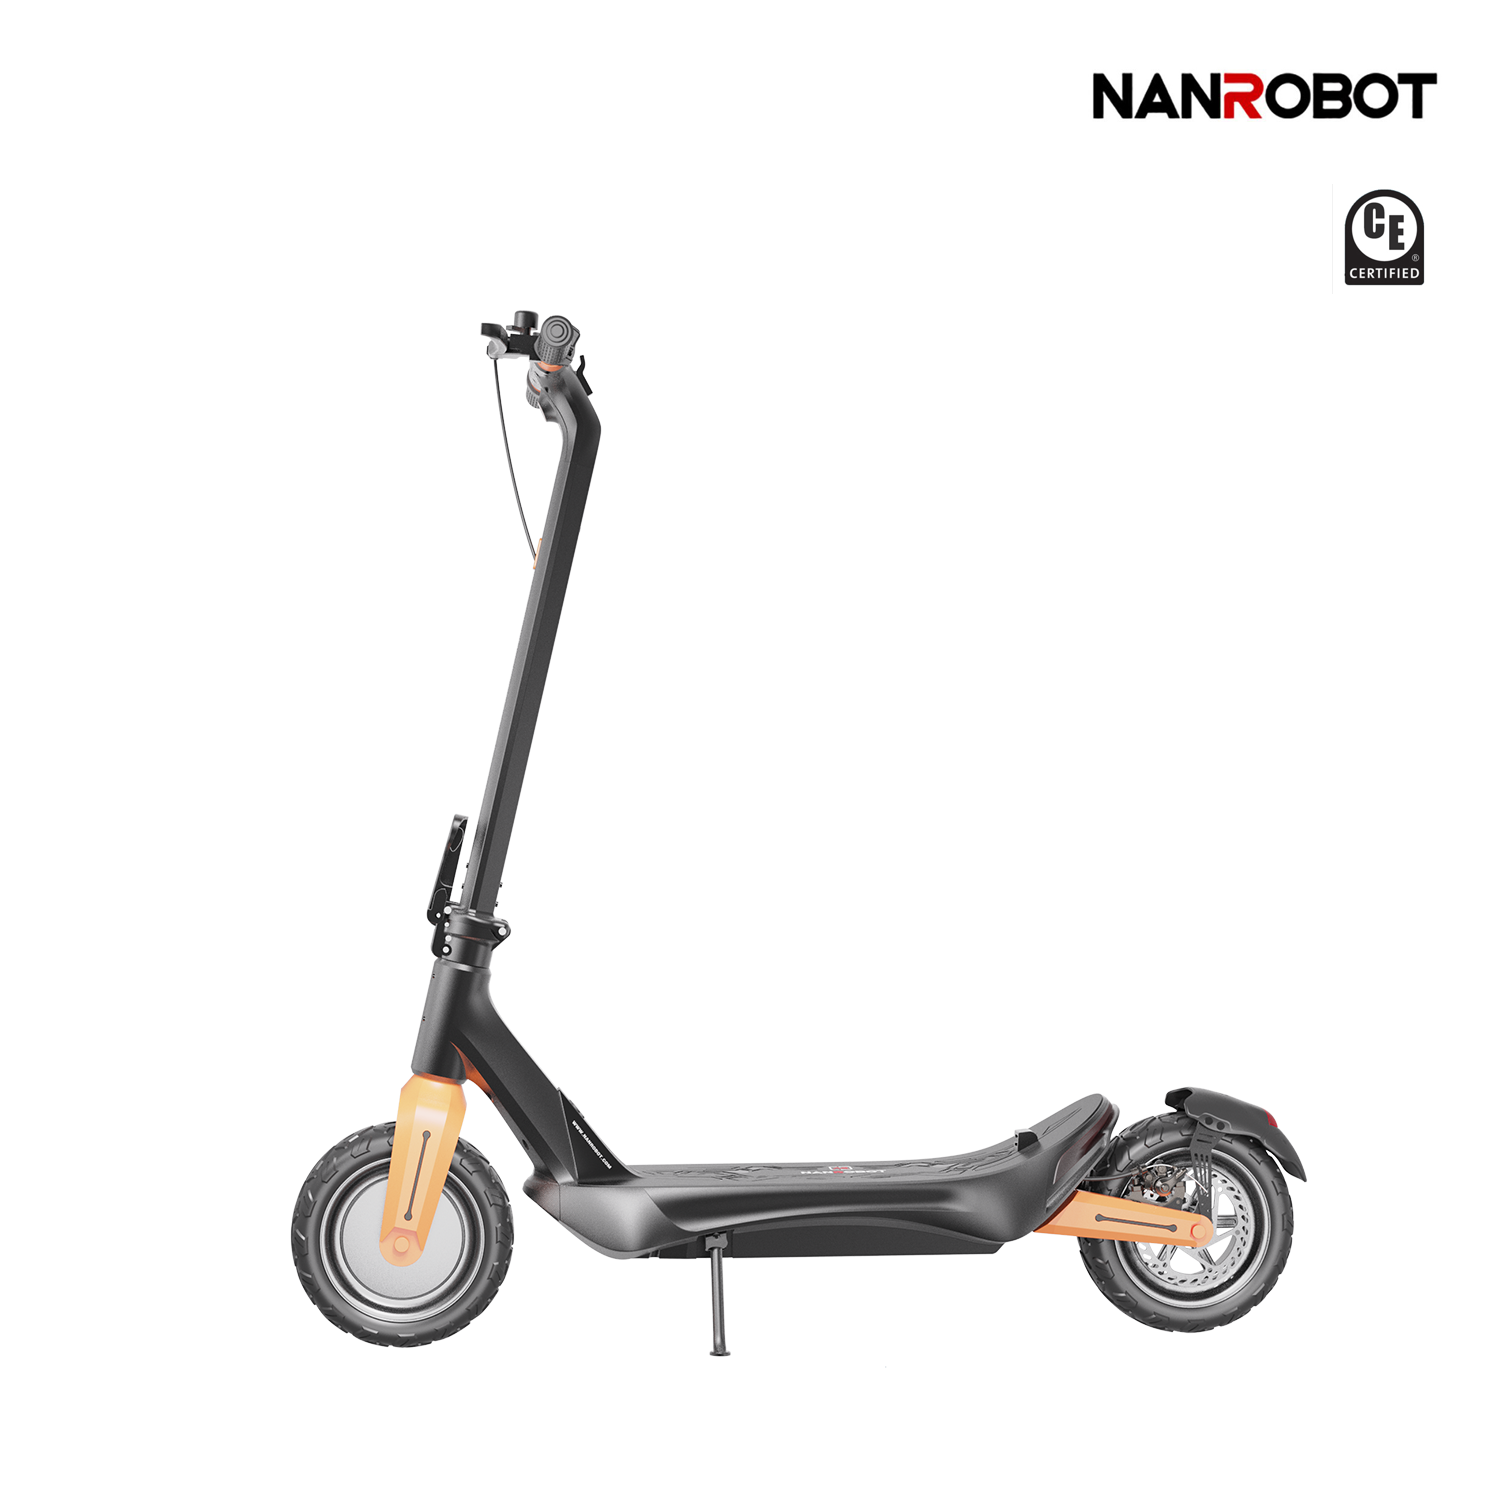 Nanrobot C1